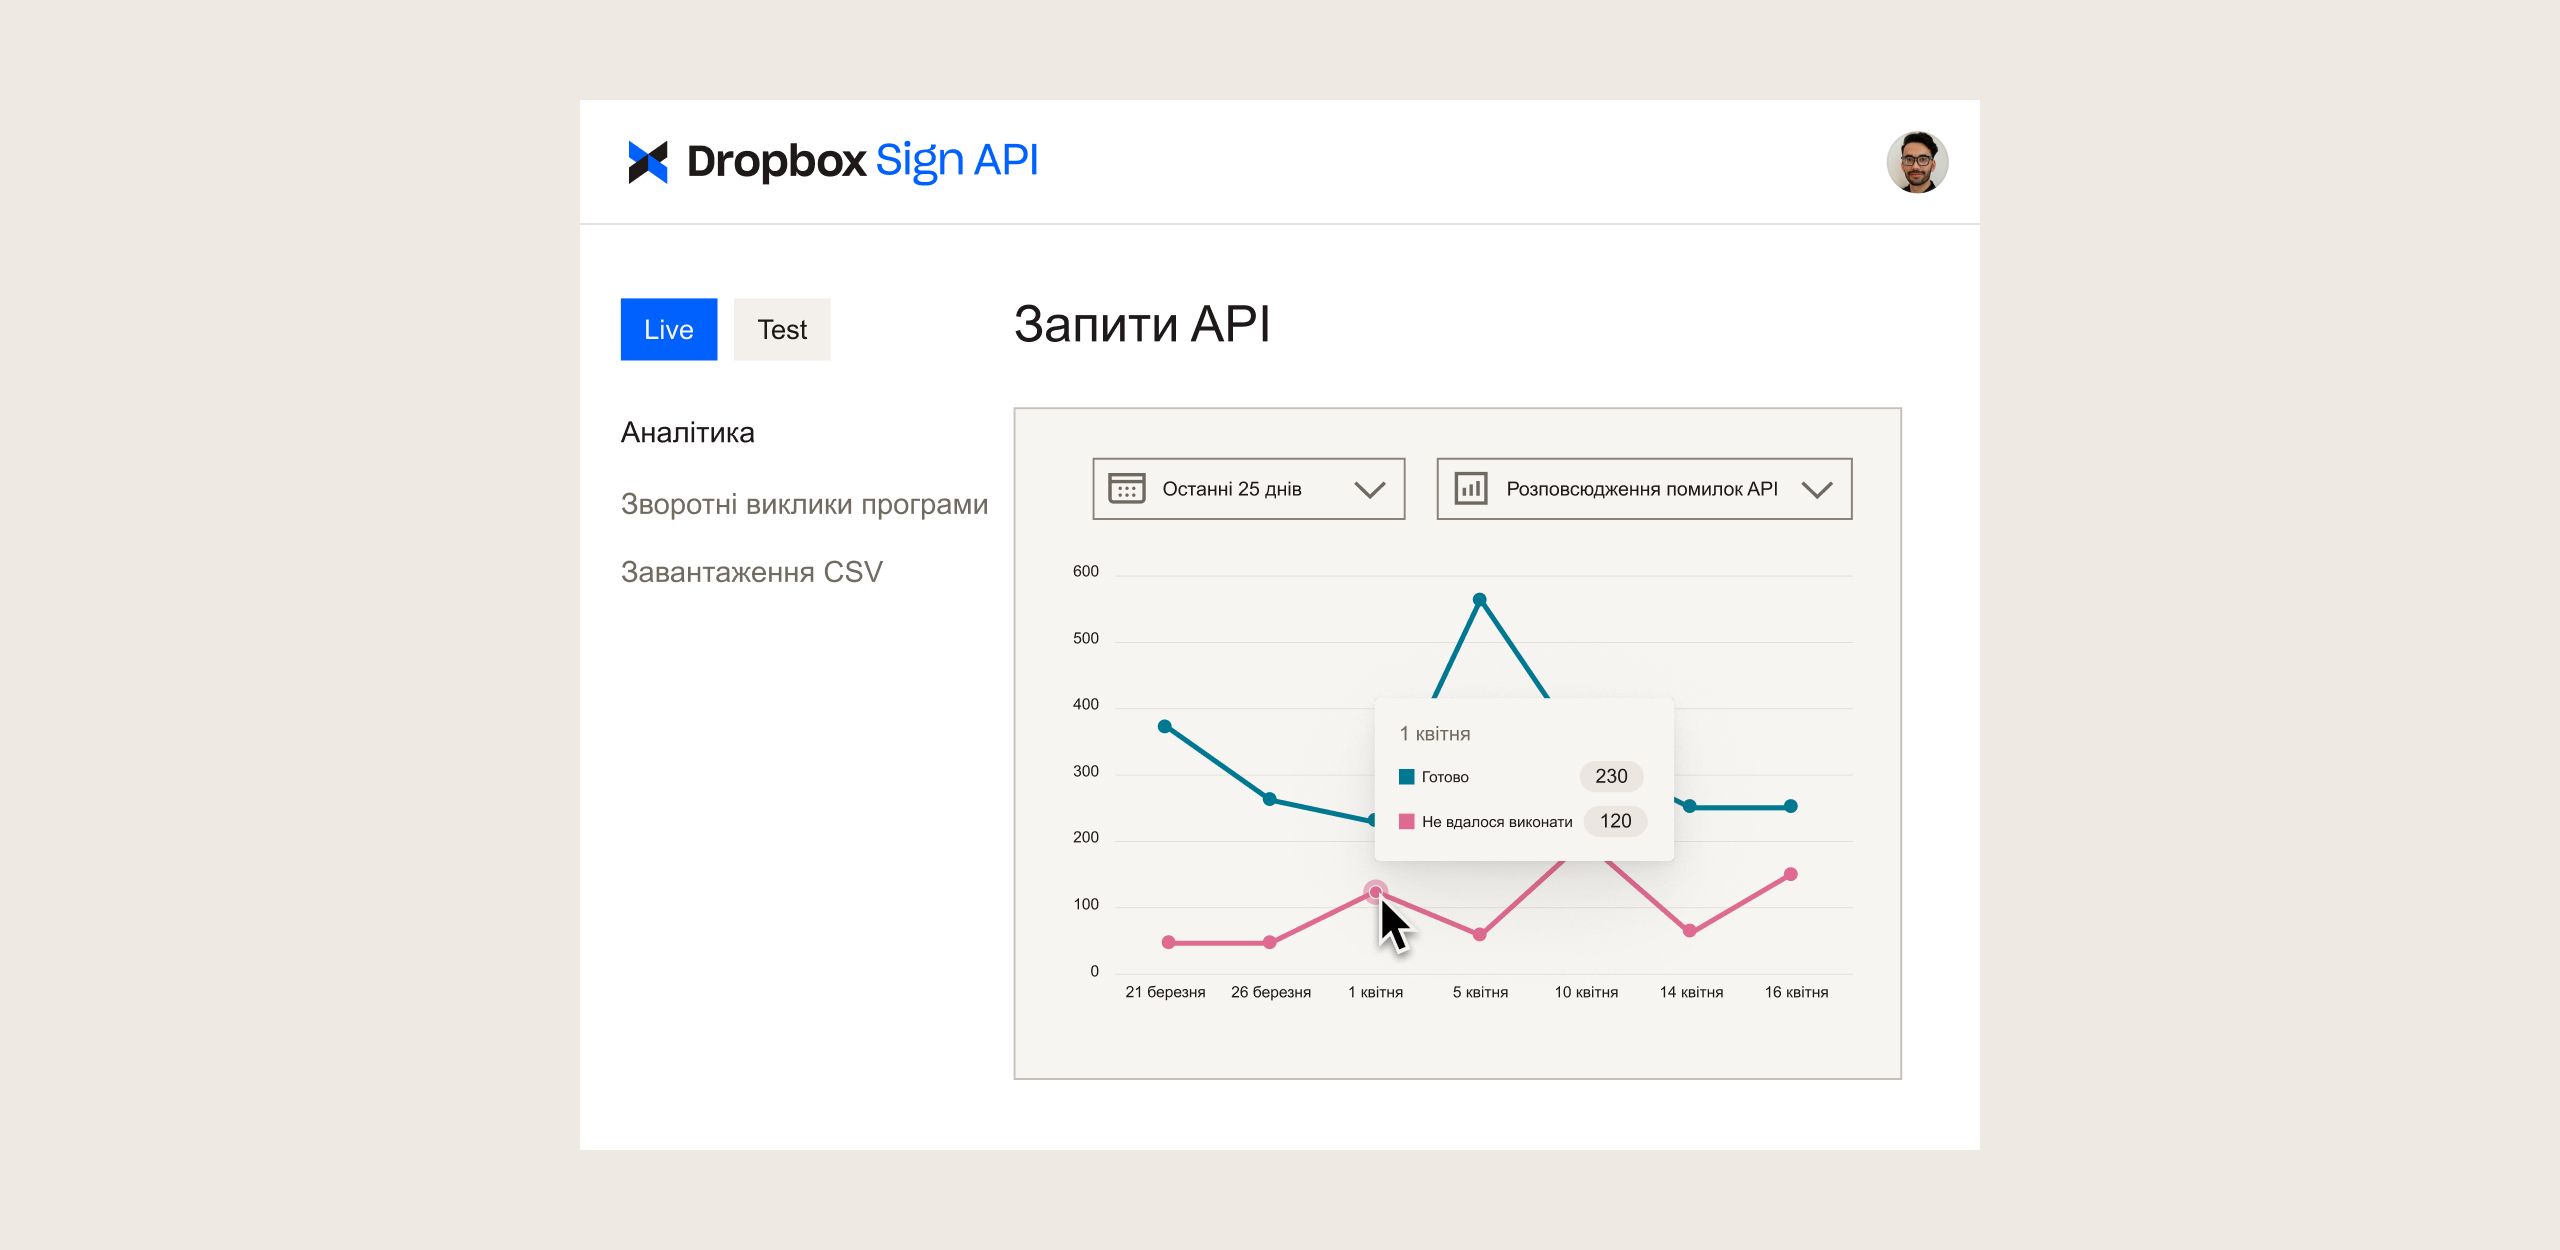 Інформаційна панель Dropbox Sign API із графіками, що відображають запити API за певний час